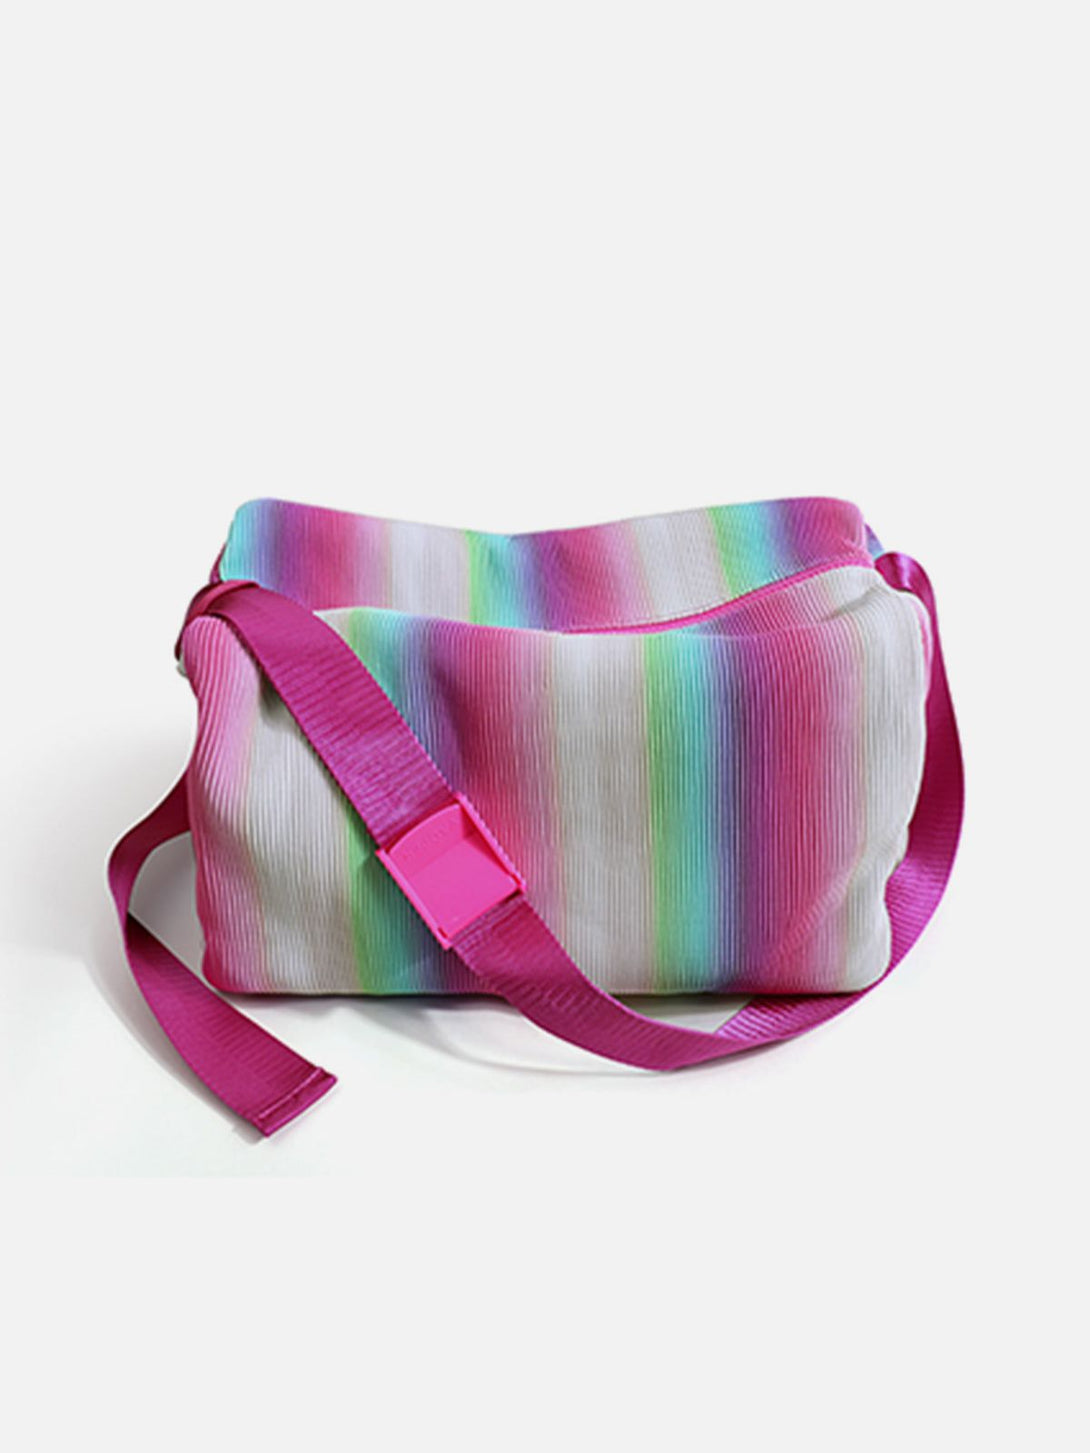 Levefly - Laser Rose Gradient Bag - Streetwear Fashion - levefly.com